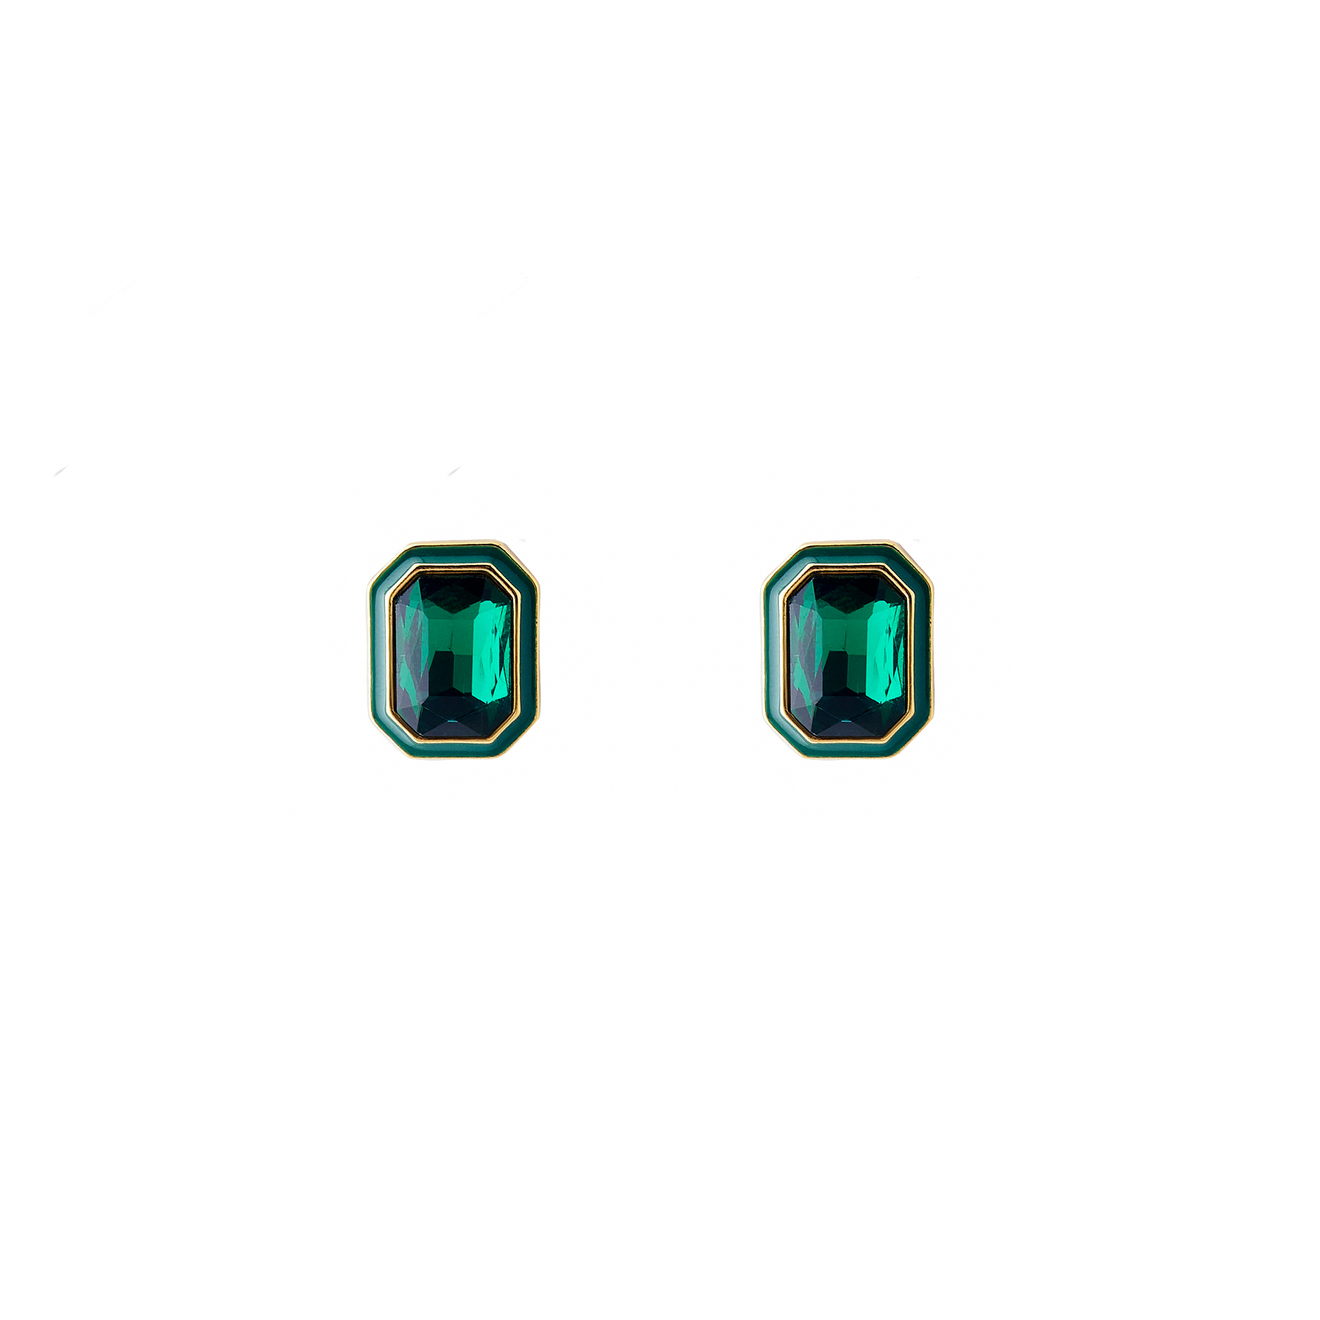 Herald Percy Крупные золотистые серьги с зелеными кристаллами и зеленой эмалью lisa smith золотистые крупные круглые серьги с круговым орнаментом